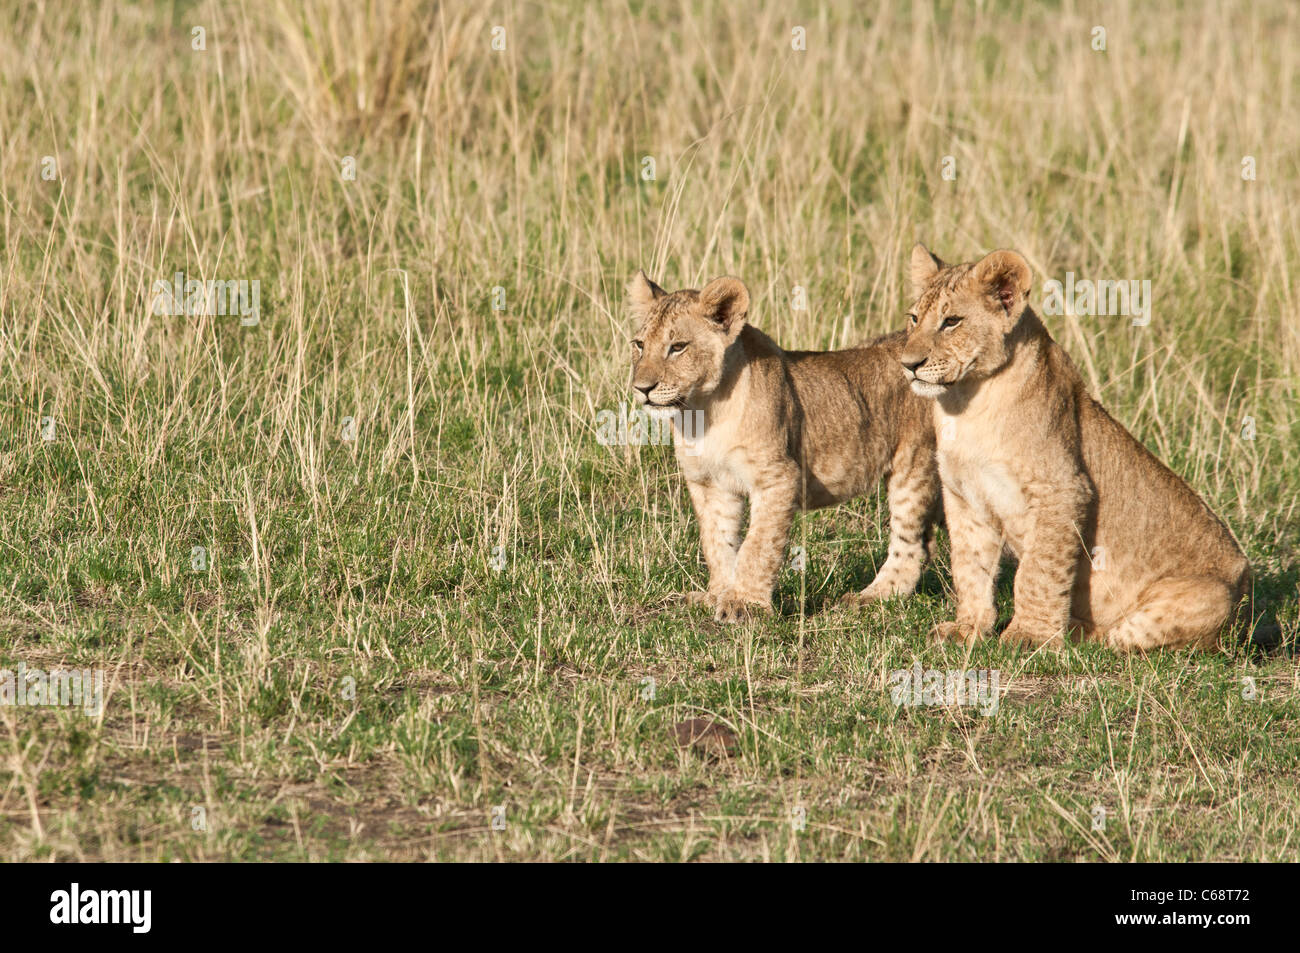 Deux des lionceaux, frères, Panthera leo, Masai Mara National Reserve, Kenya, Africa Banque D'Images